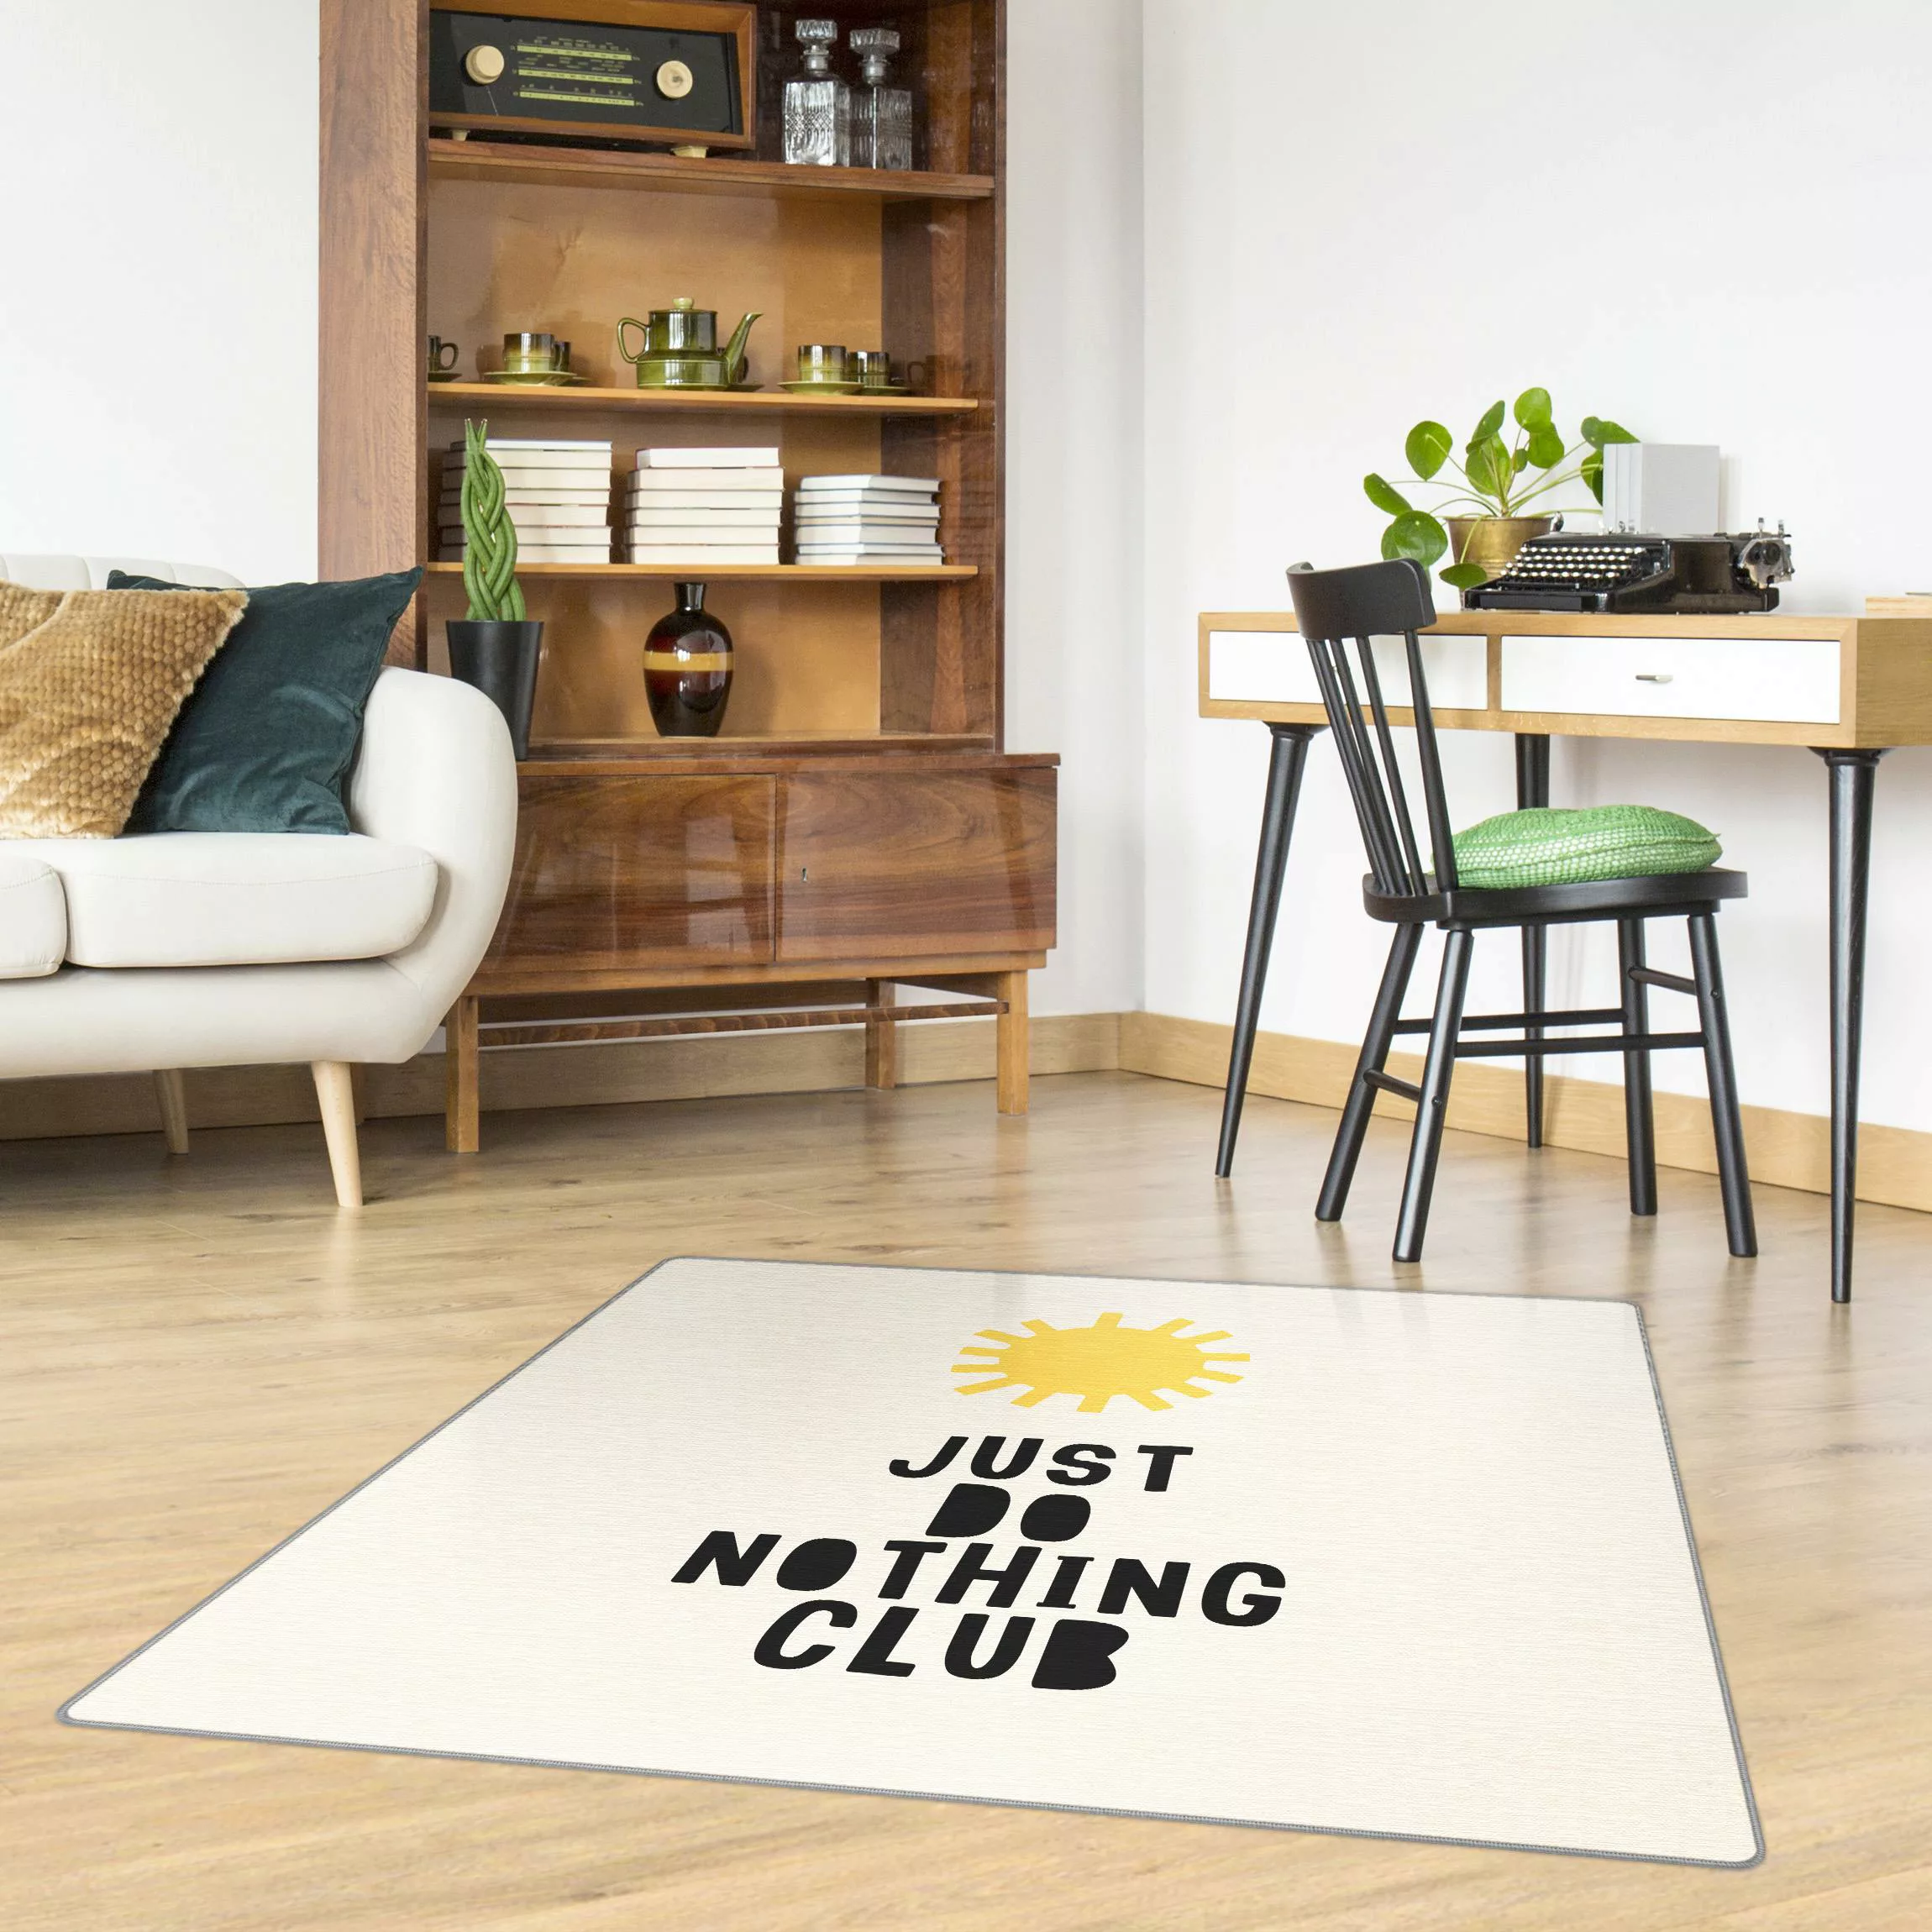 Teppich Do Nothing Club Gelb günstig online kaufen